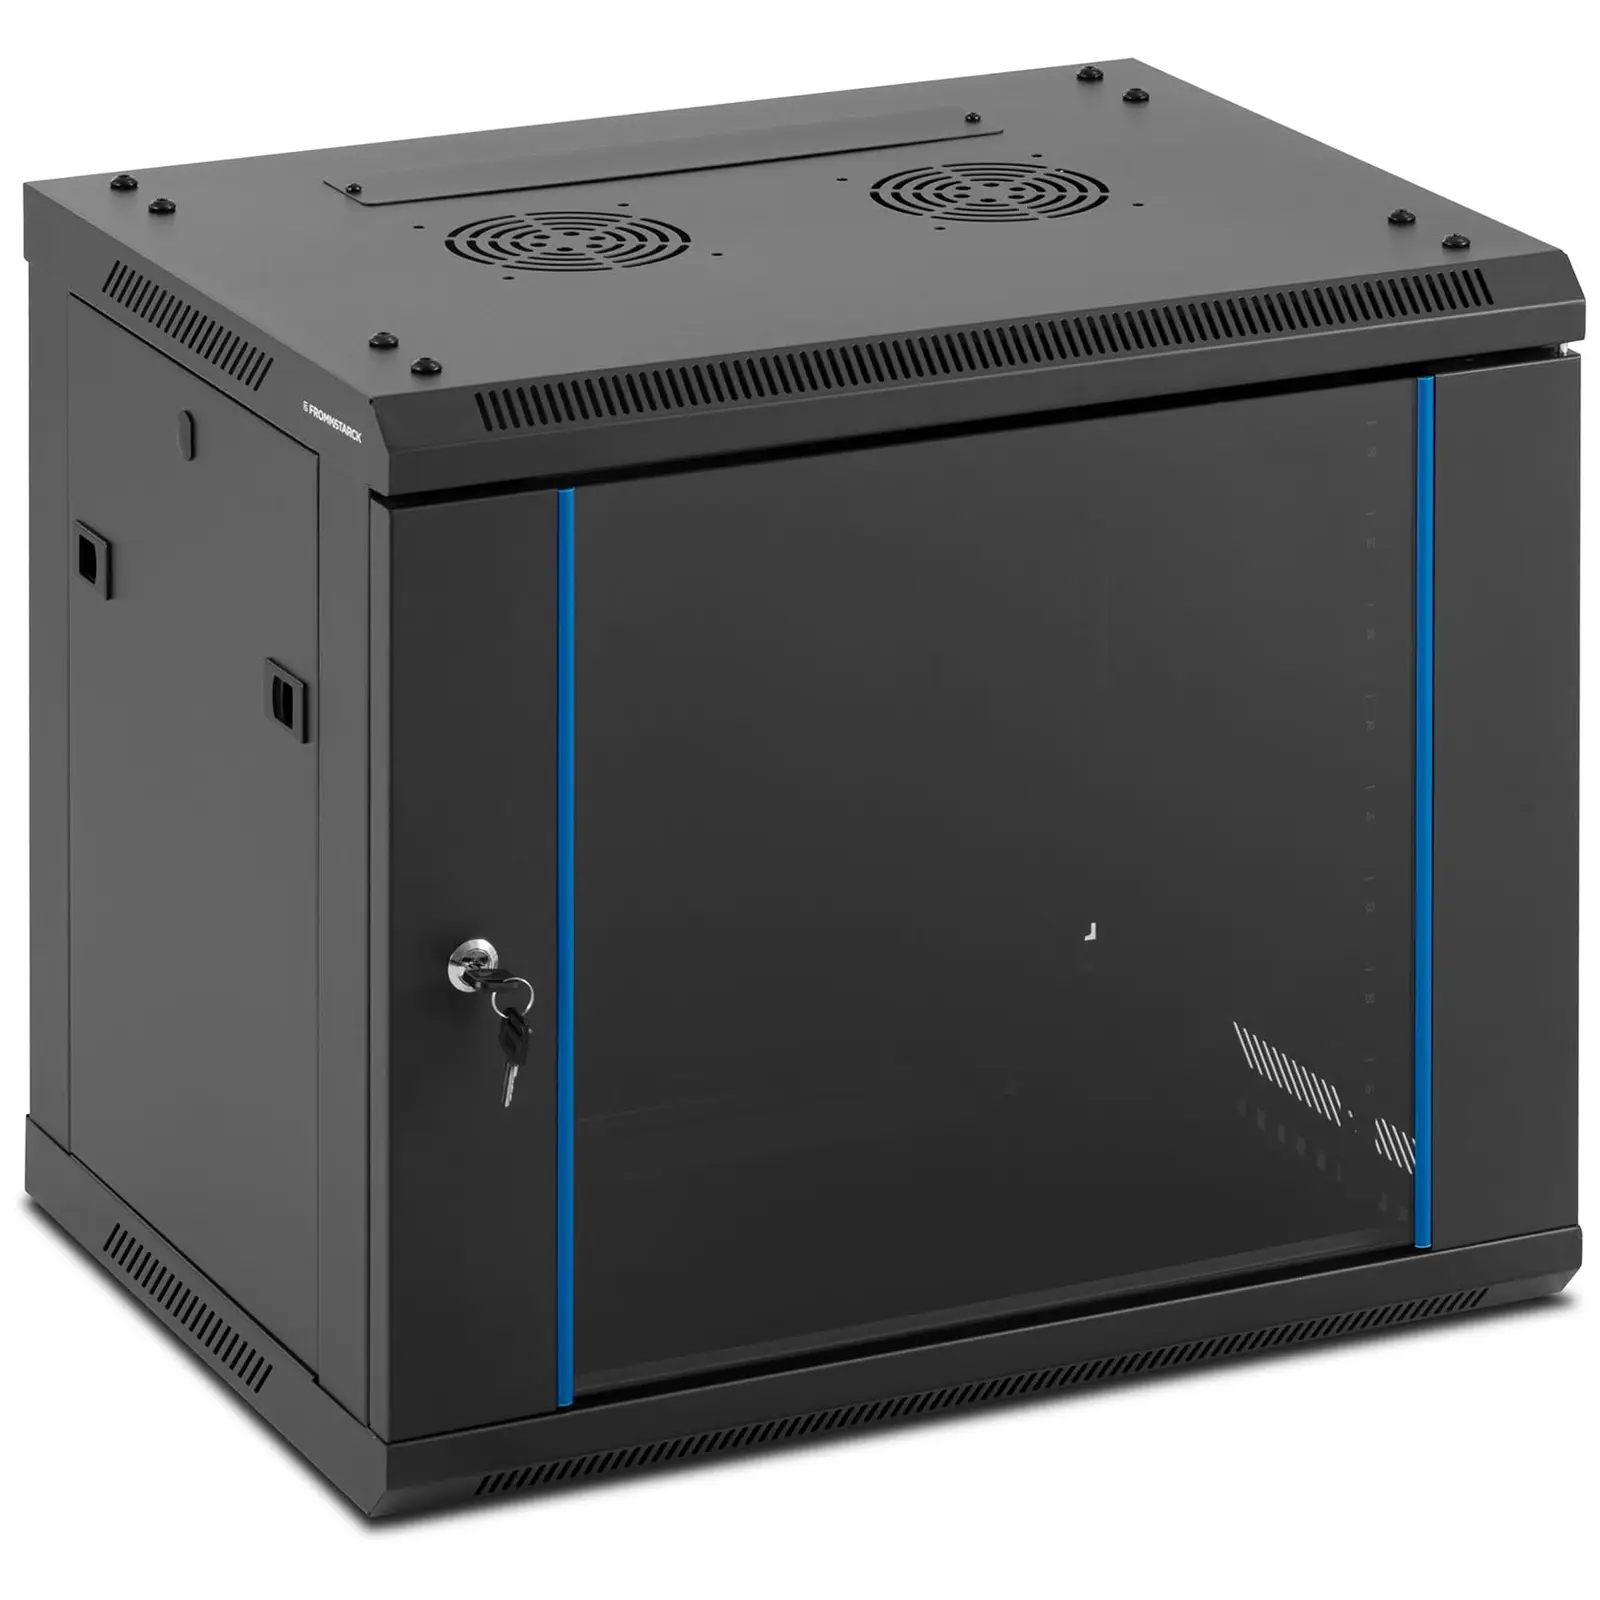 Serverschrank - 19 Zoll - 9 HE - abschließbar - bis 60 kg - Black - abnehmbare Rückseite